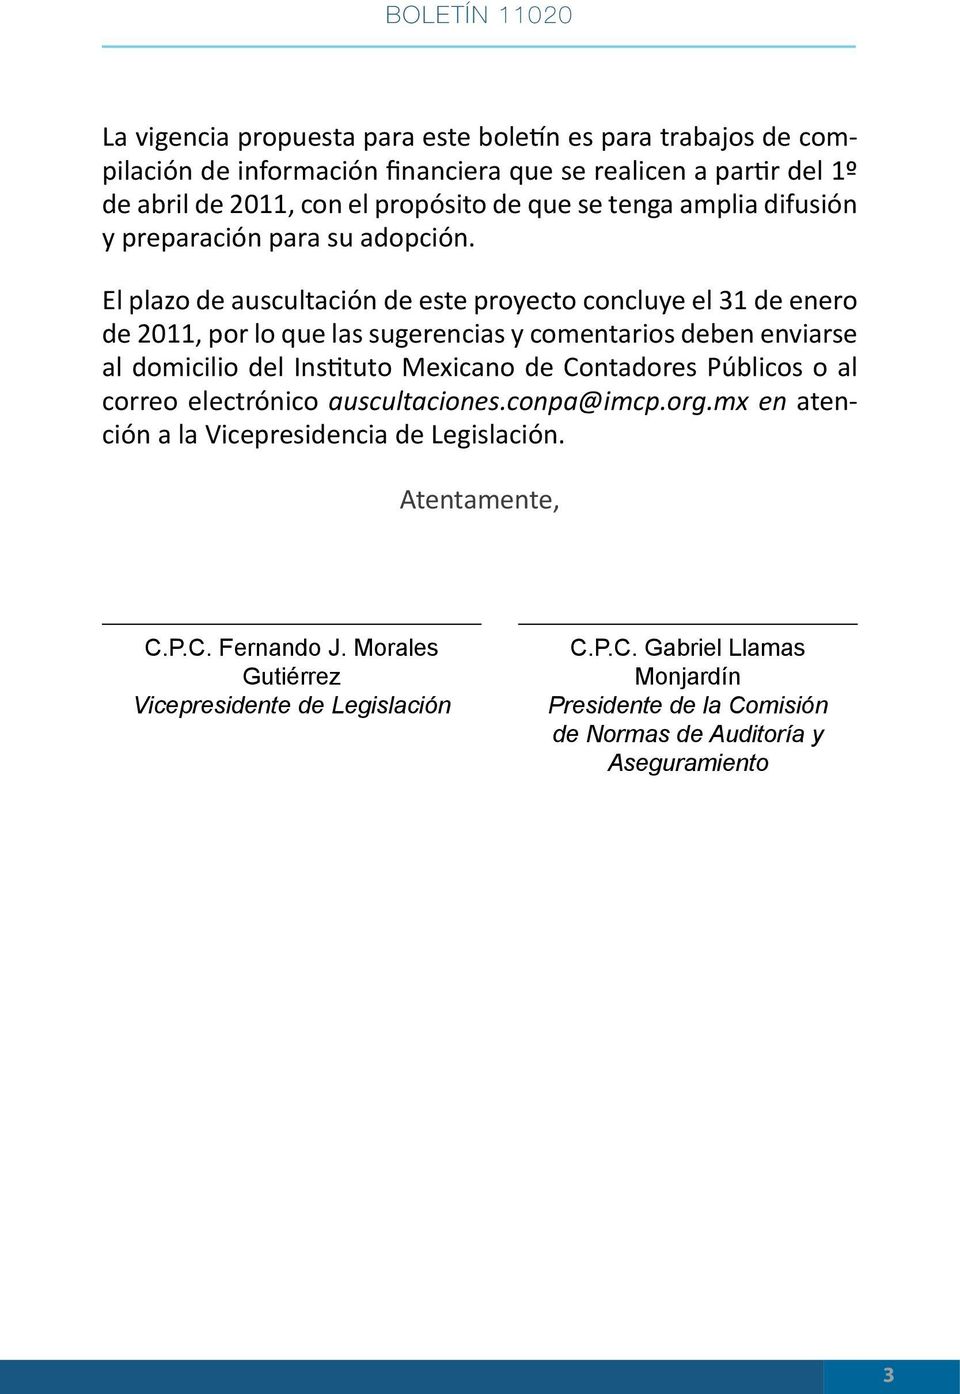 El plazo de auscultación de este proyecto concluye el 31 de enero de 2011, por lo que las sugerencias y comentarios deben enviarse al domicilio del Instituto Mexicano de